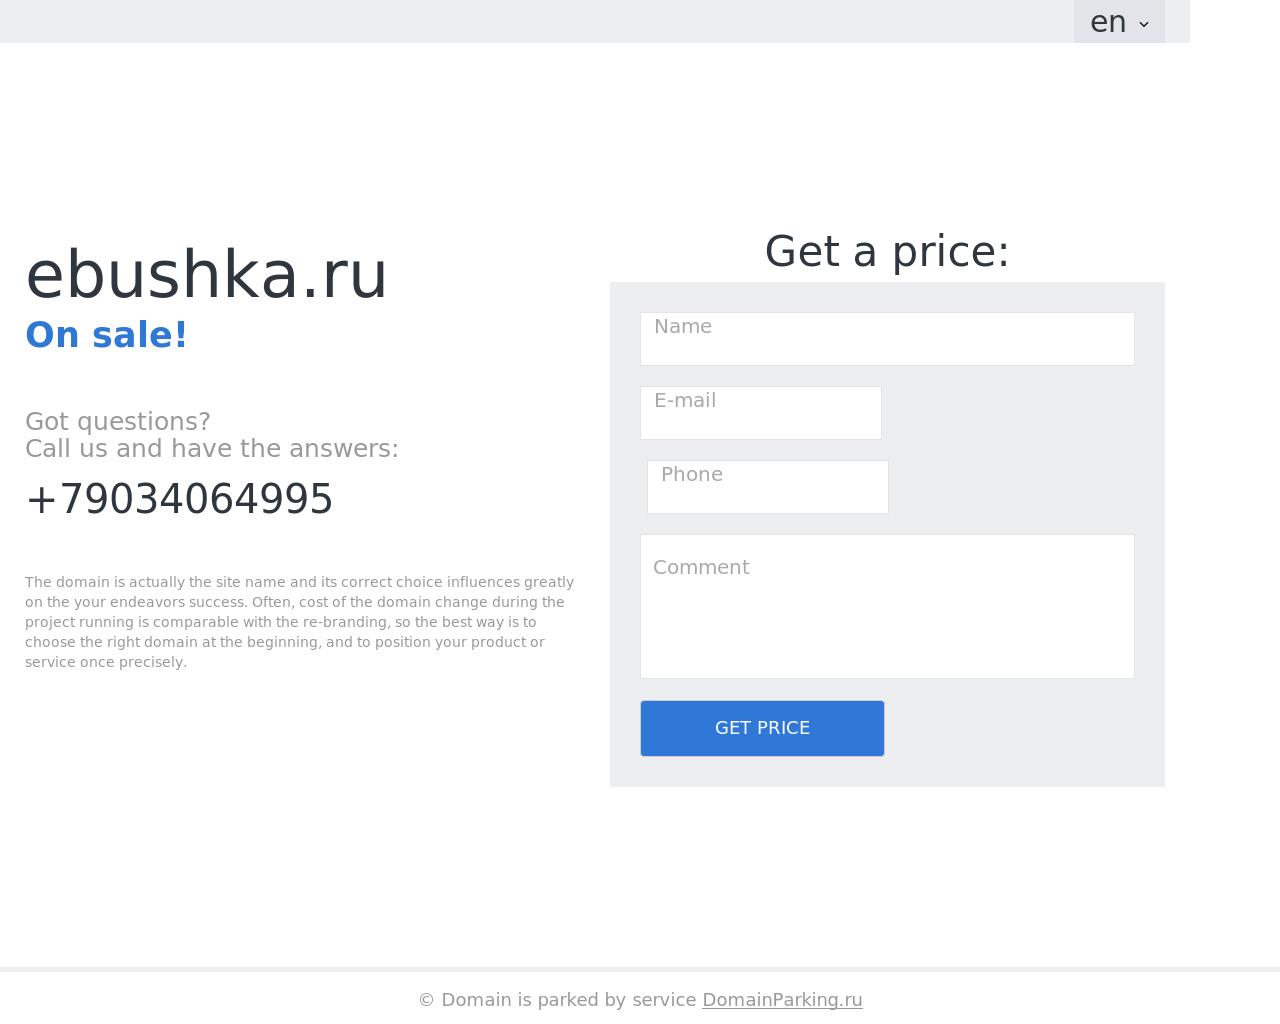 Изображение сайта ebushka.ru в разрешении 1280x1024